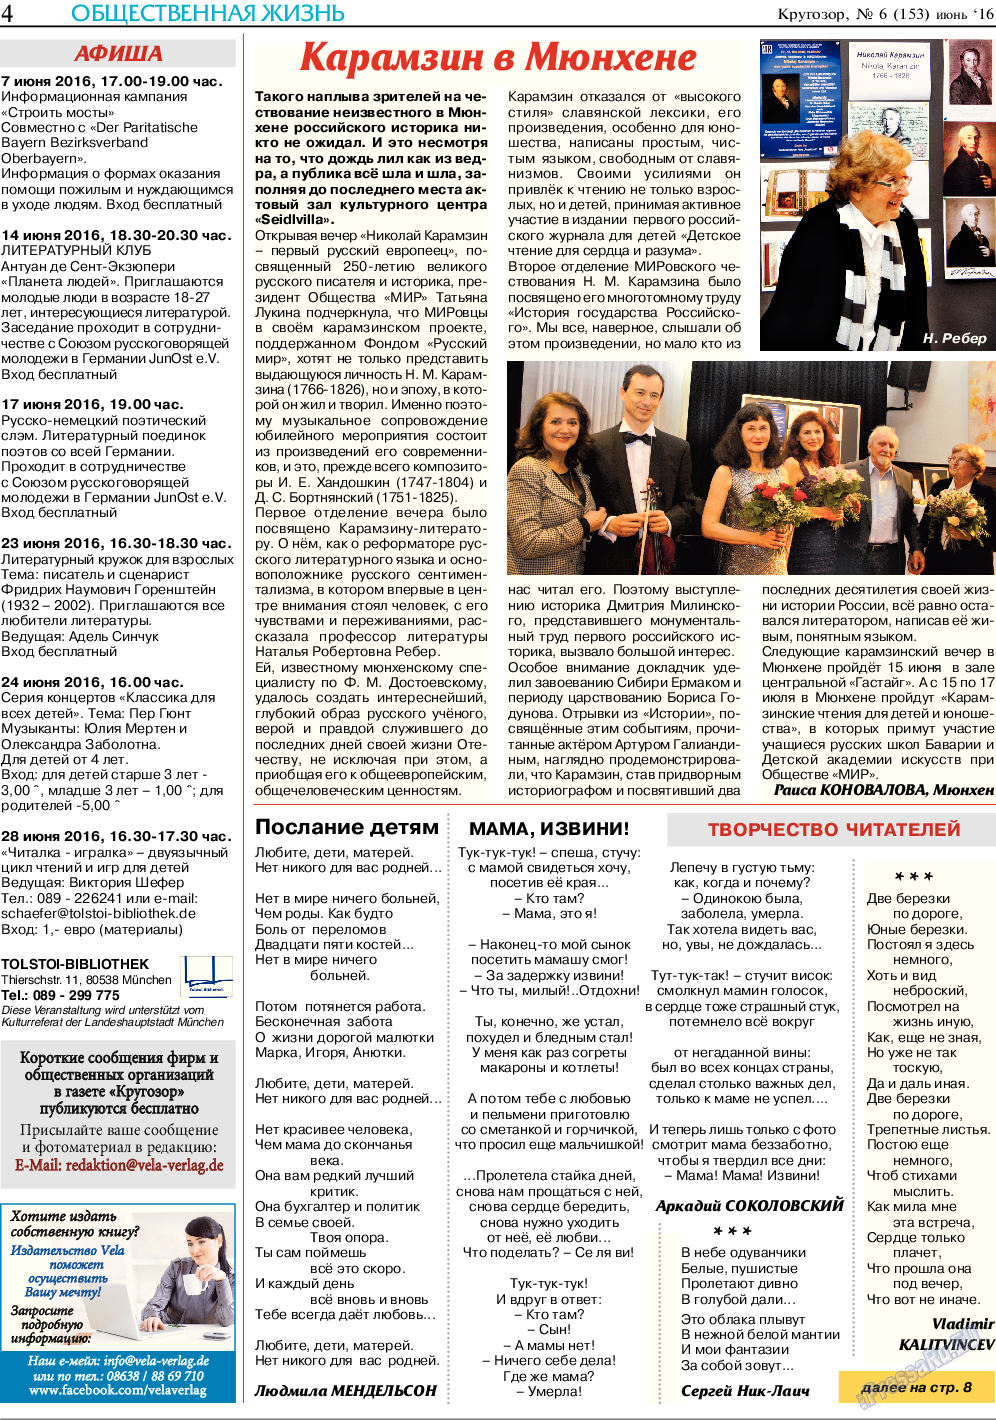 Кругозор, газета. 2016 №6 стр.4